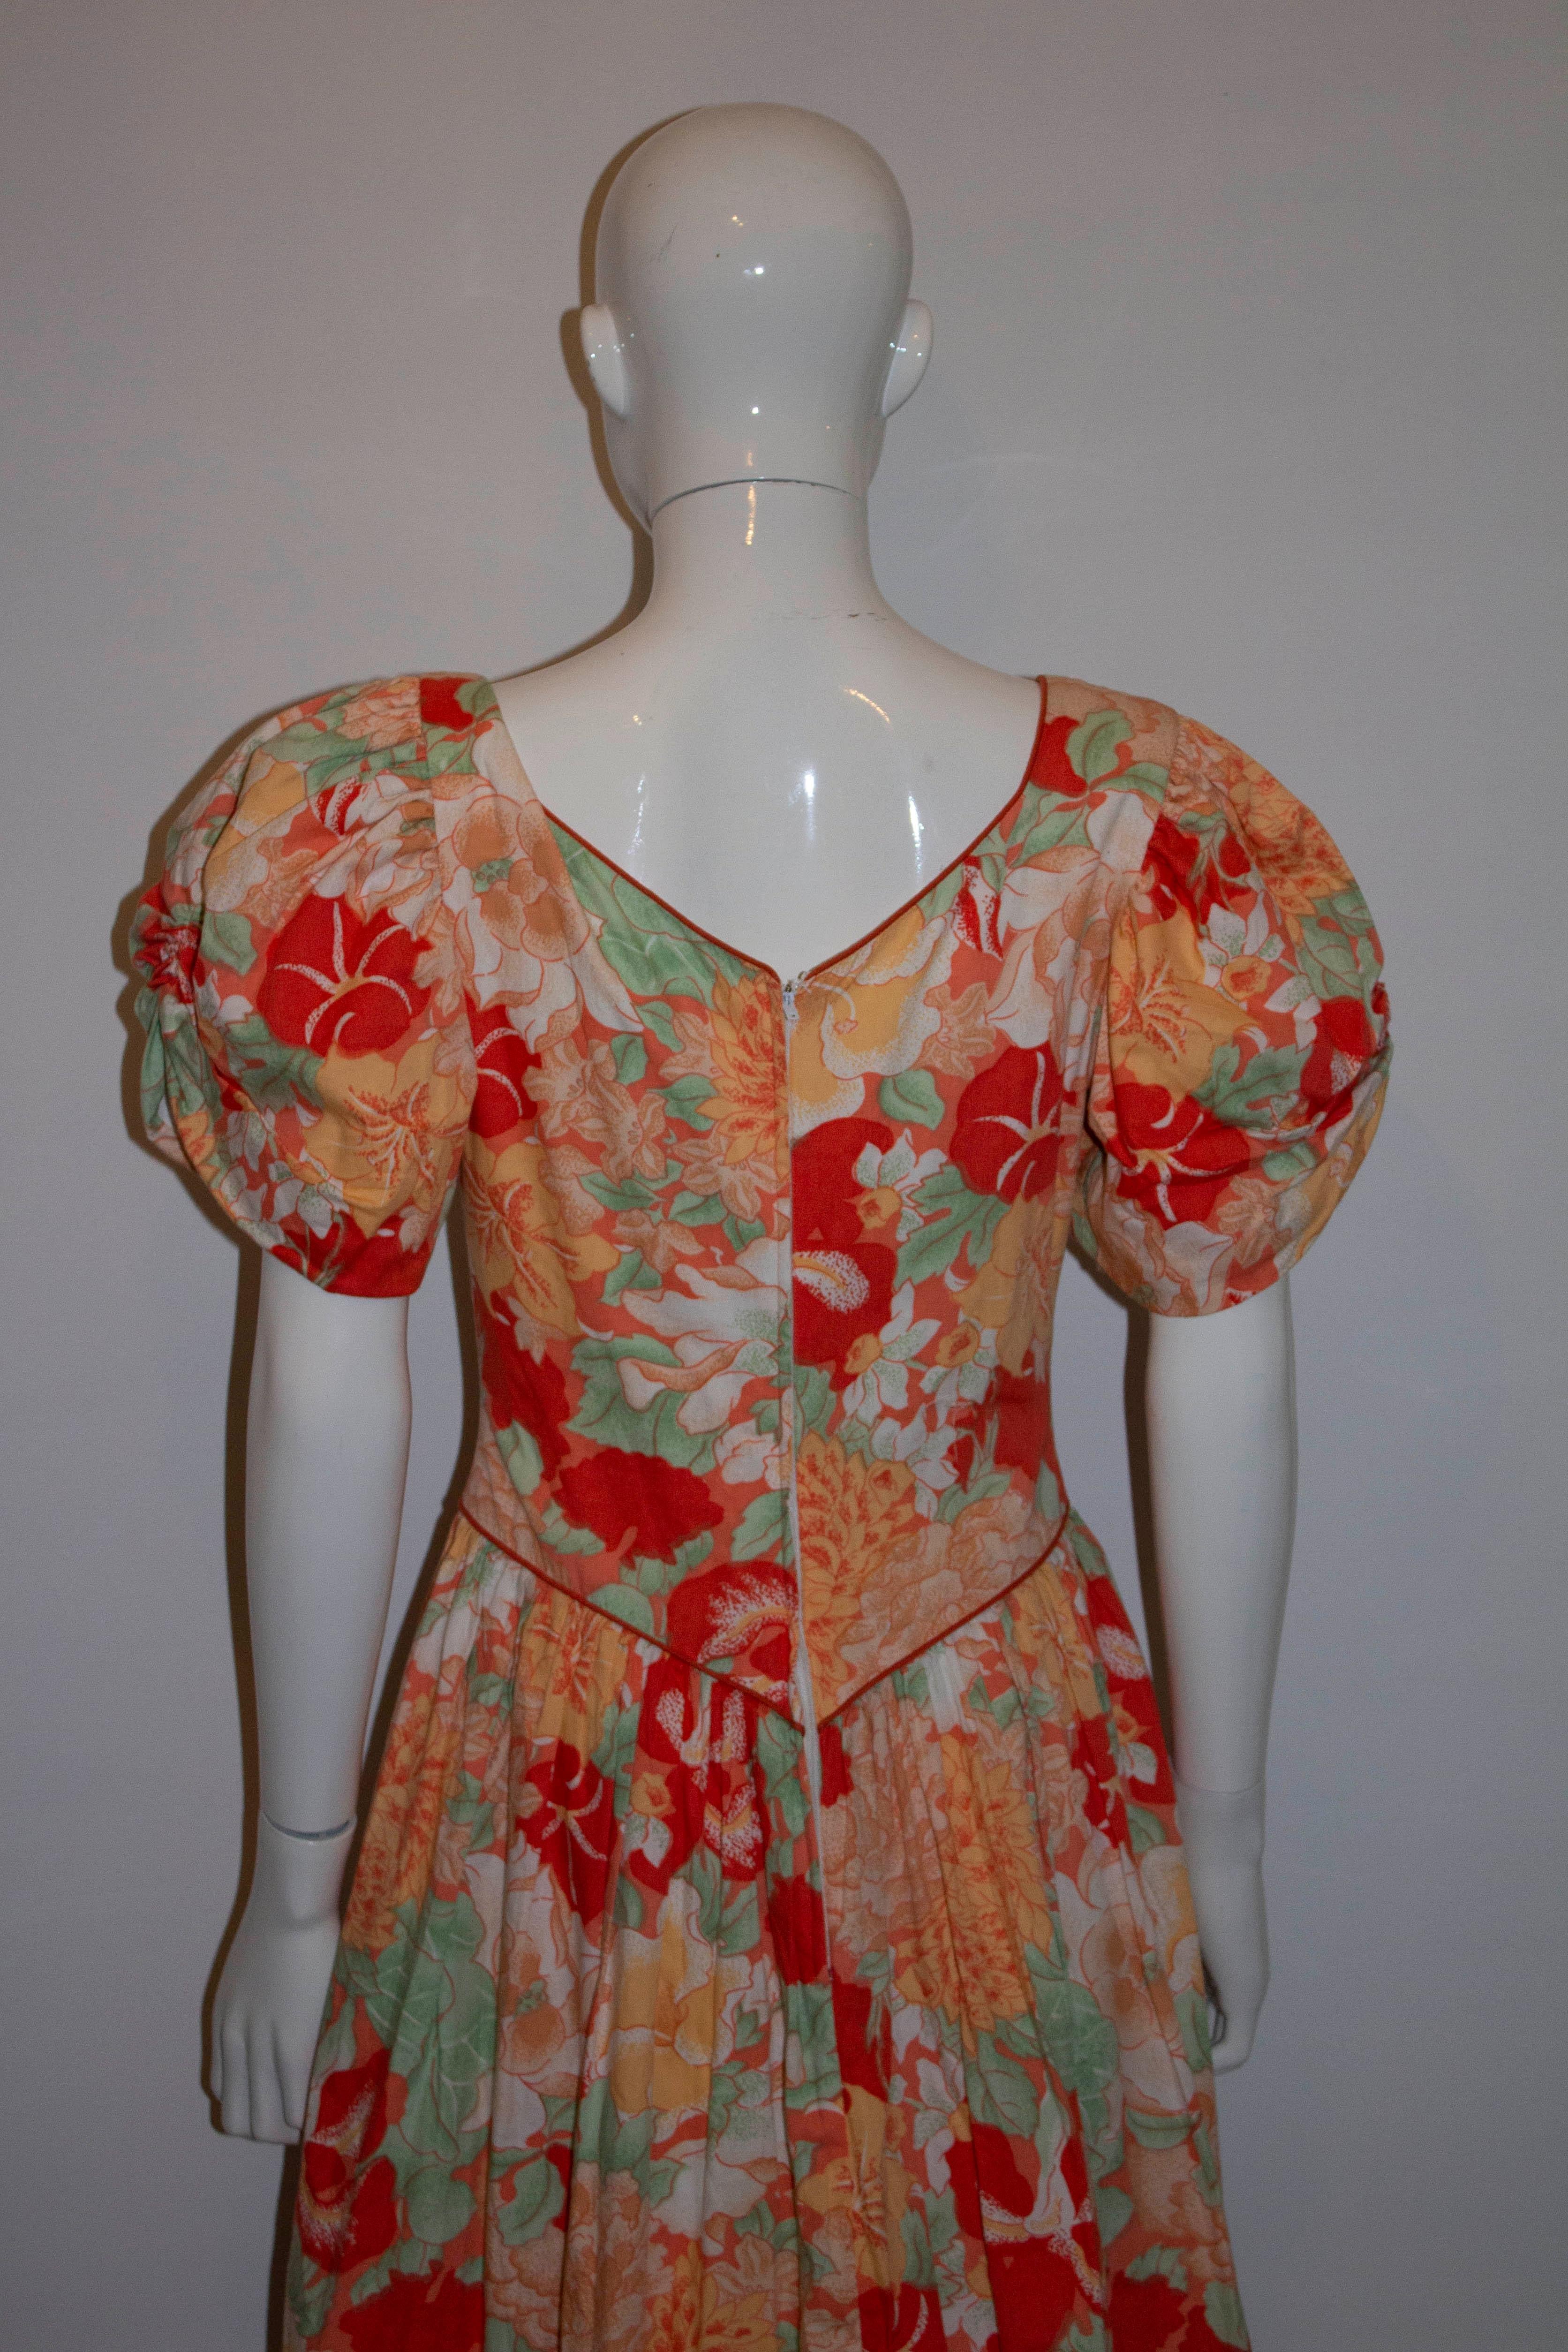 Ein wunderschönes geblümtes Kleid aus Baumwolle im Vintage-Stil in einer Mischung aus Orange, Rot und Grün. Das Kleid hat Puffärmel und einen süßen Herzausschnitt mit zentralem Rückenreißverschluss.  Es ist mit Baumwolle gefüttert und hat einen